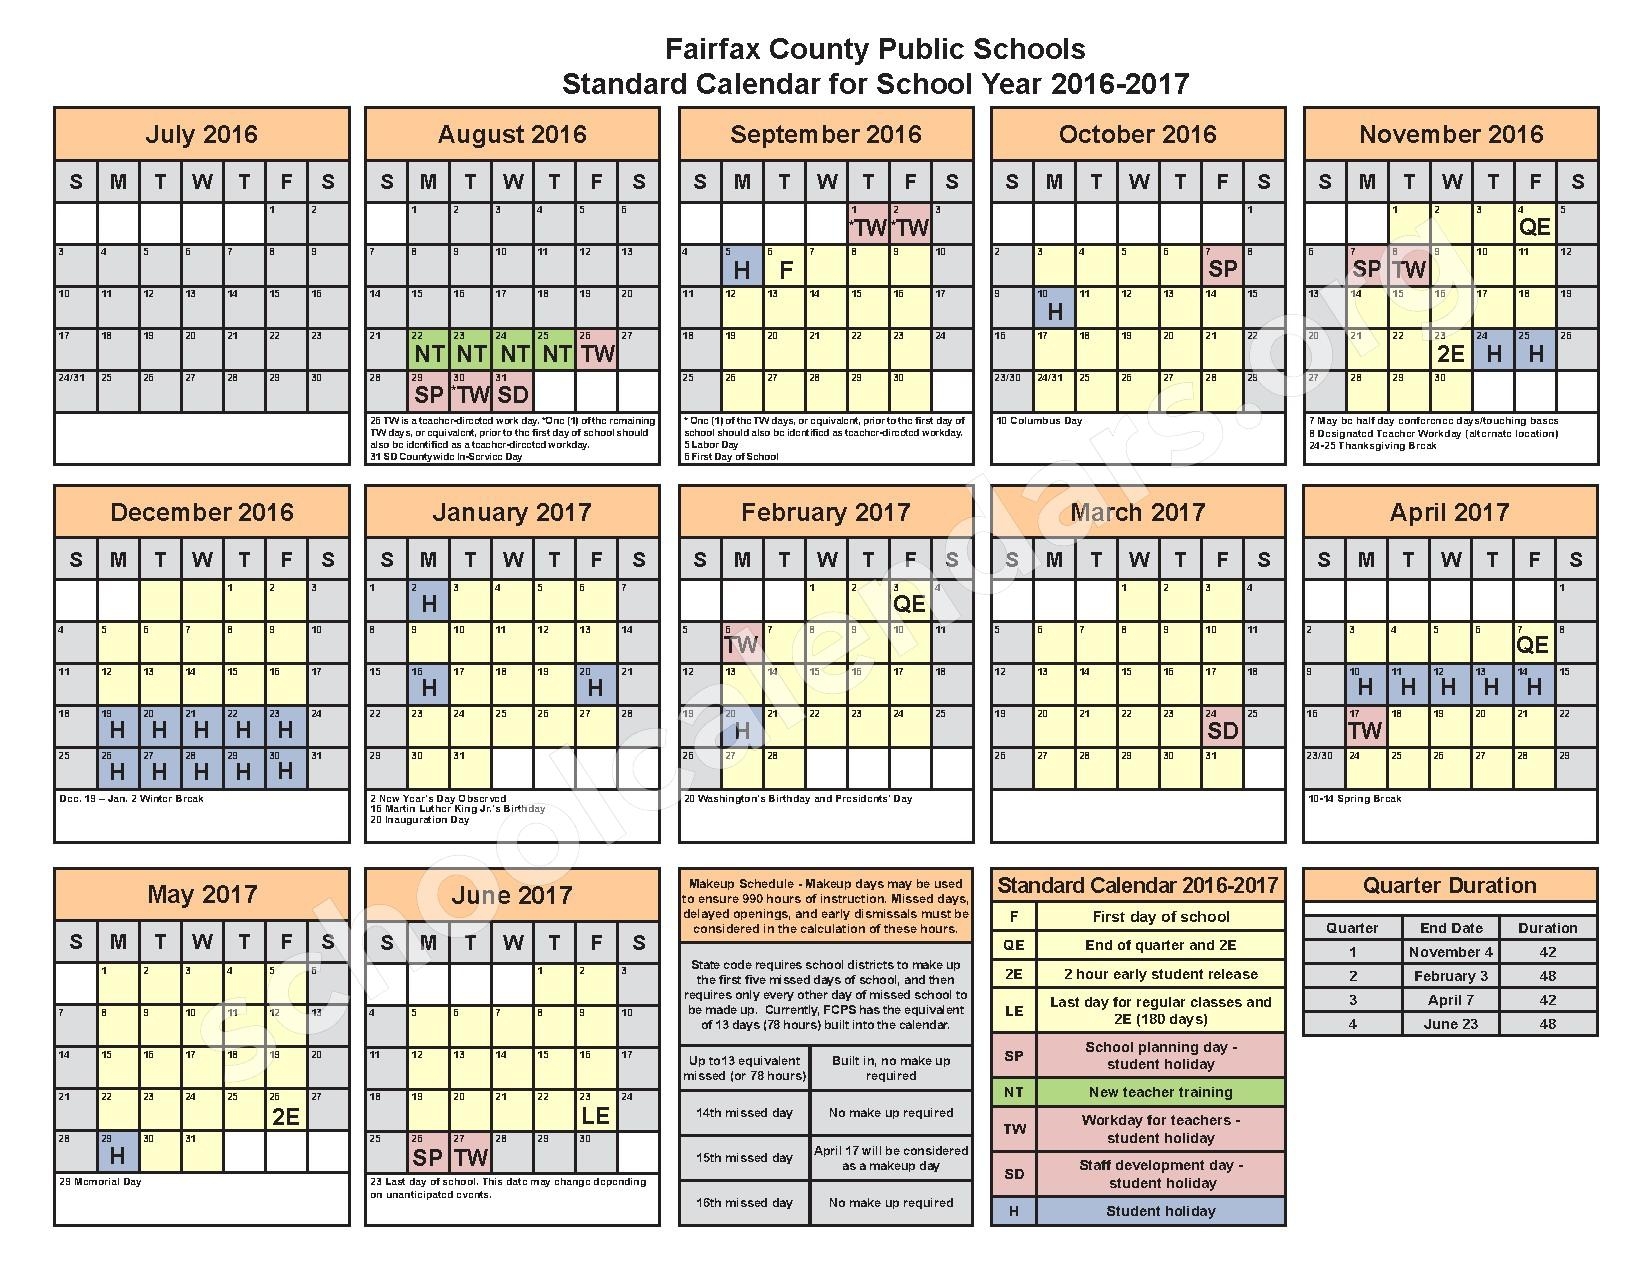 fairfax-county-public-school-calendar-qualads